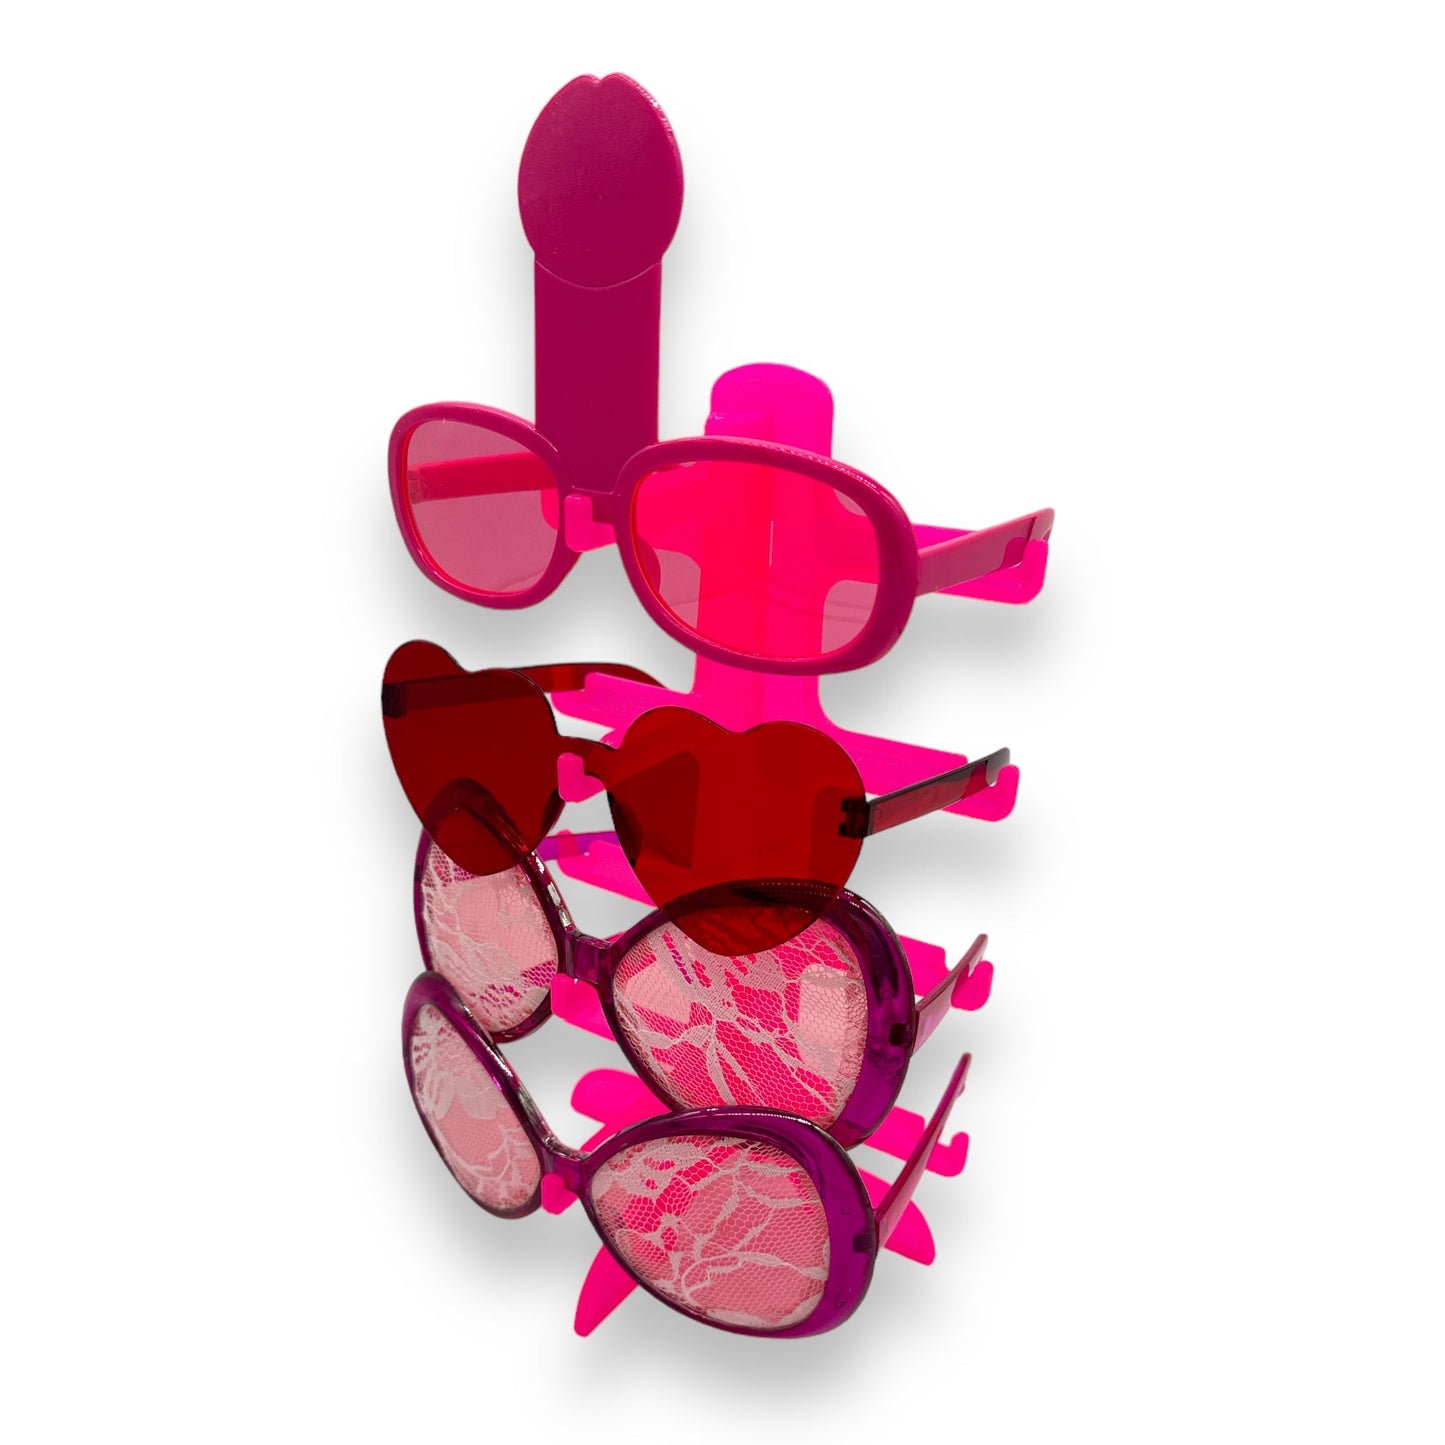 Kinky Pleasure - FT047 - Penis Glasses - Pink